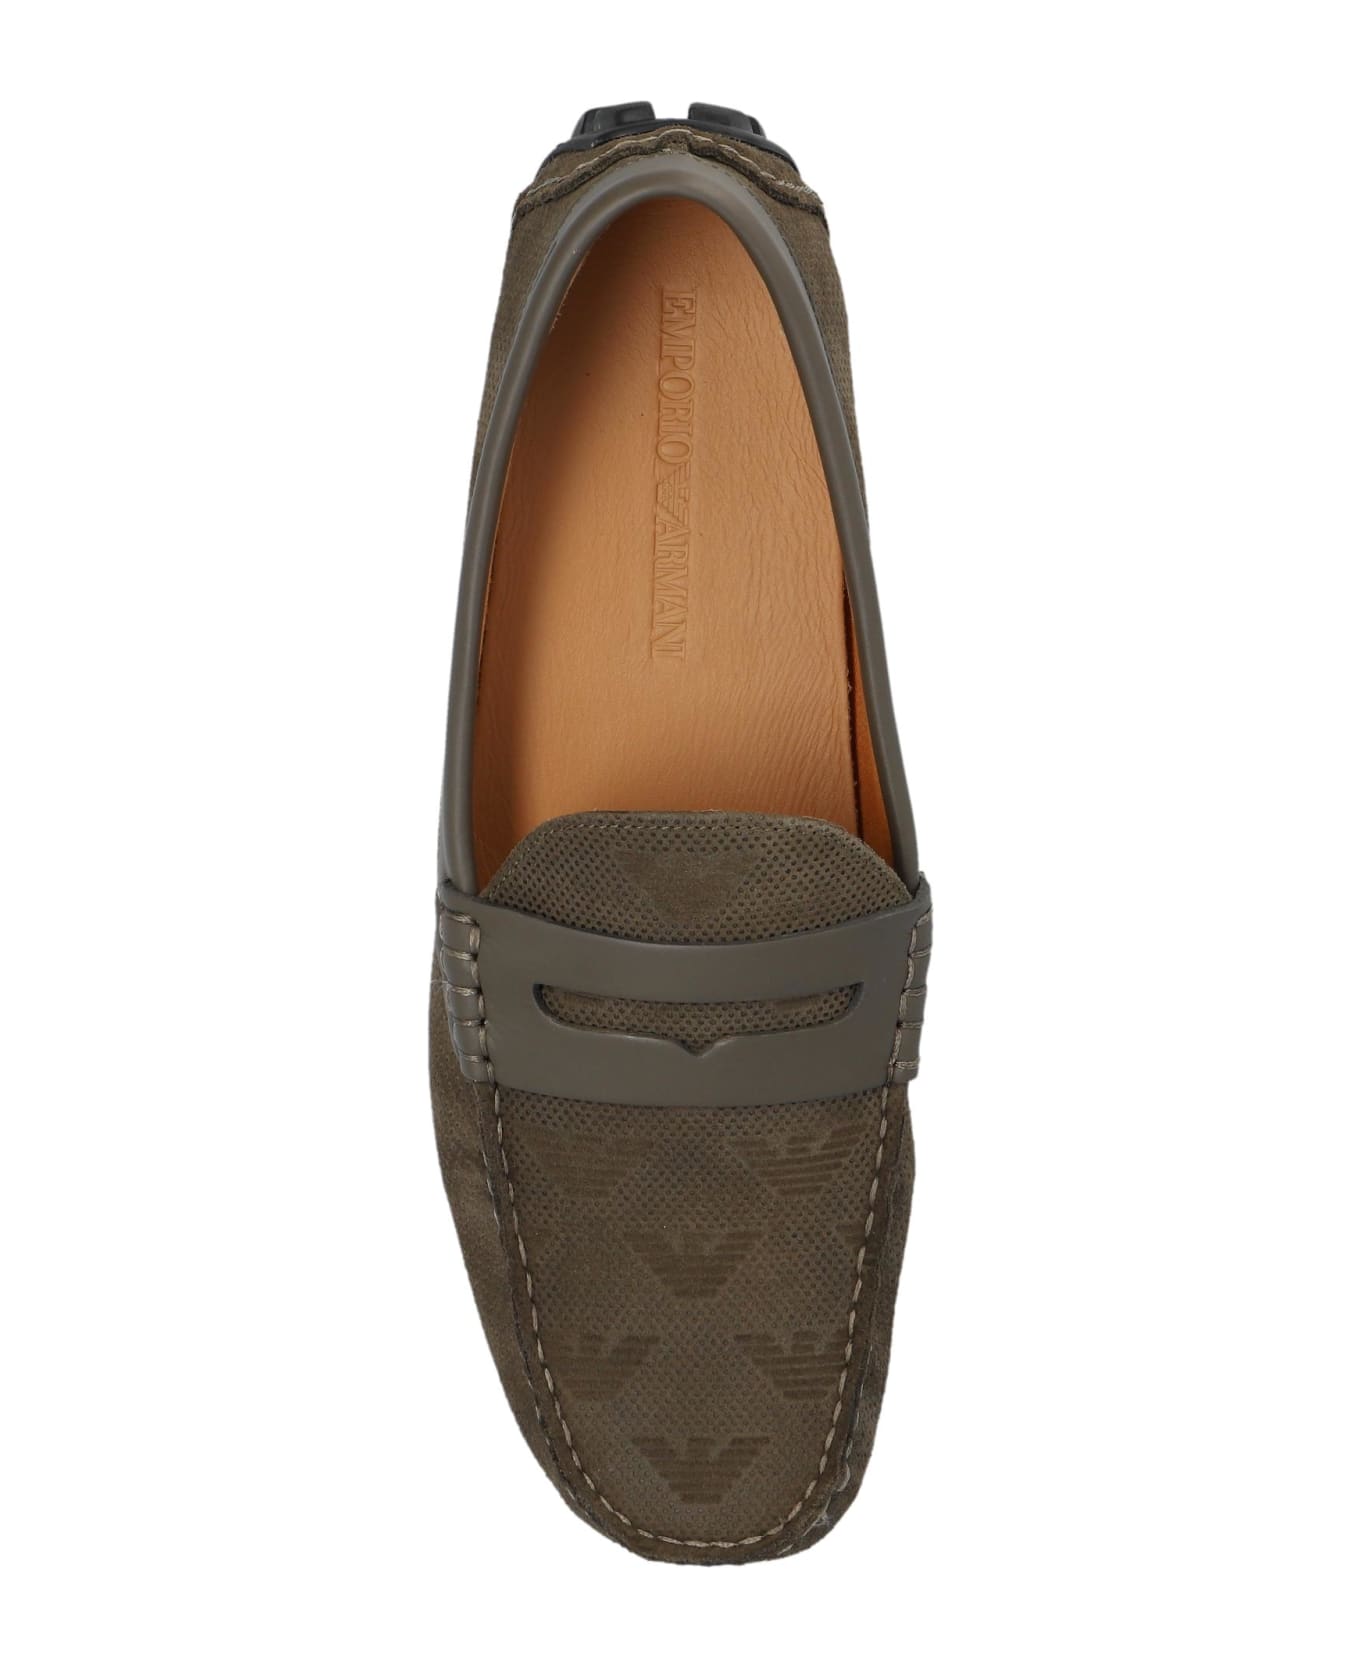 Emporio Armani Leather Loafers - Marrone